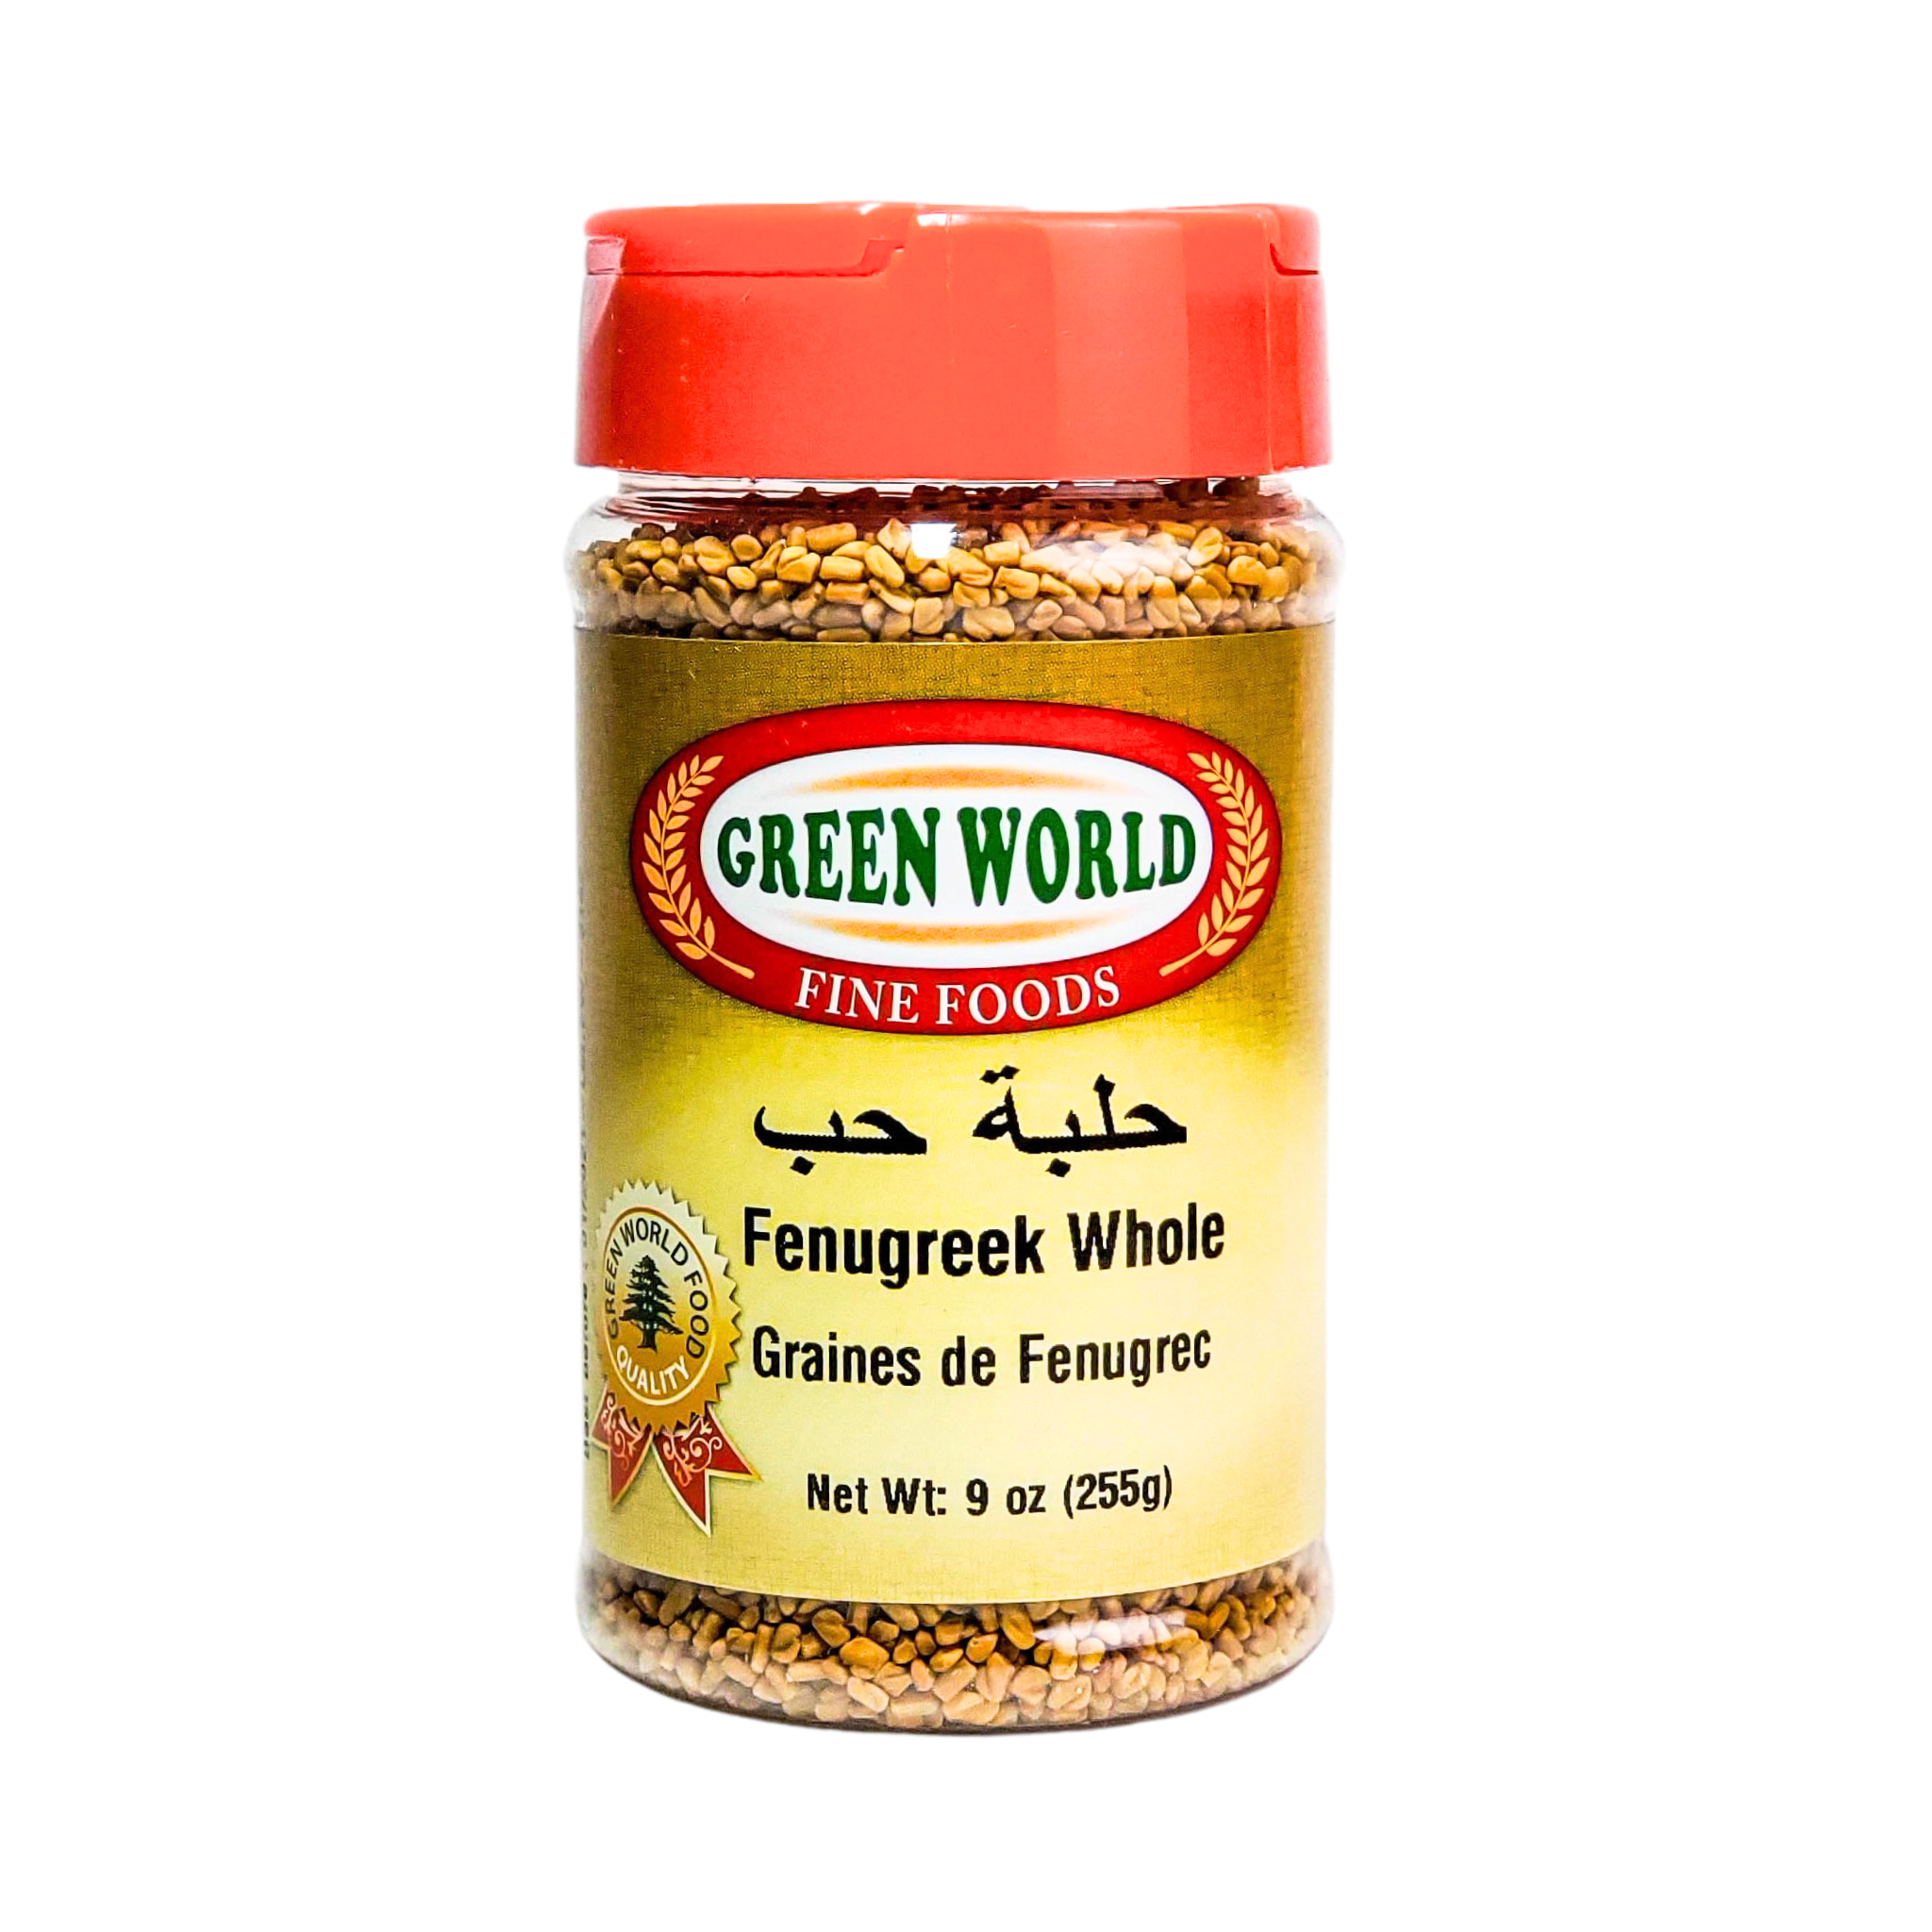 Green World Fine Foods Fenugreek Whole (Graines de Fenugrec) 225g